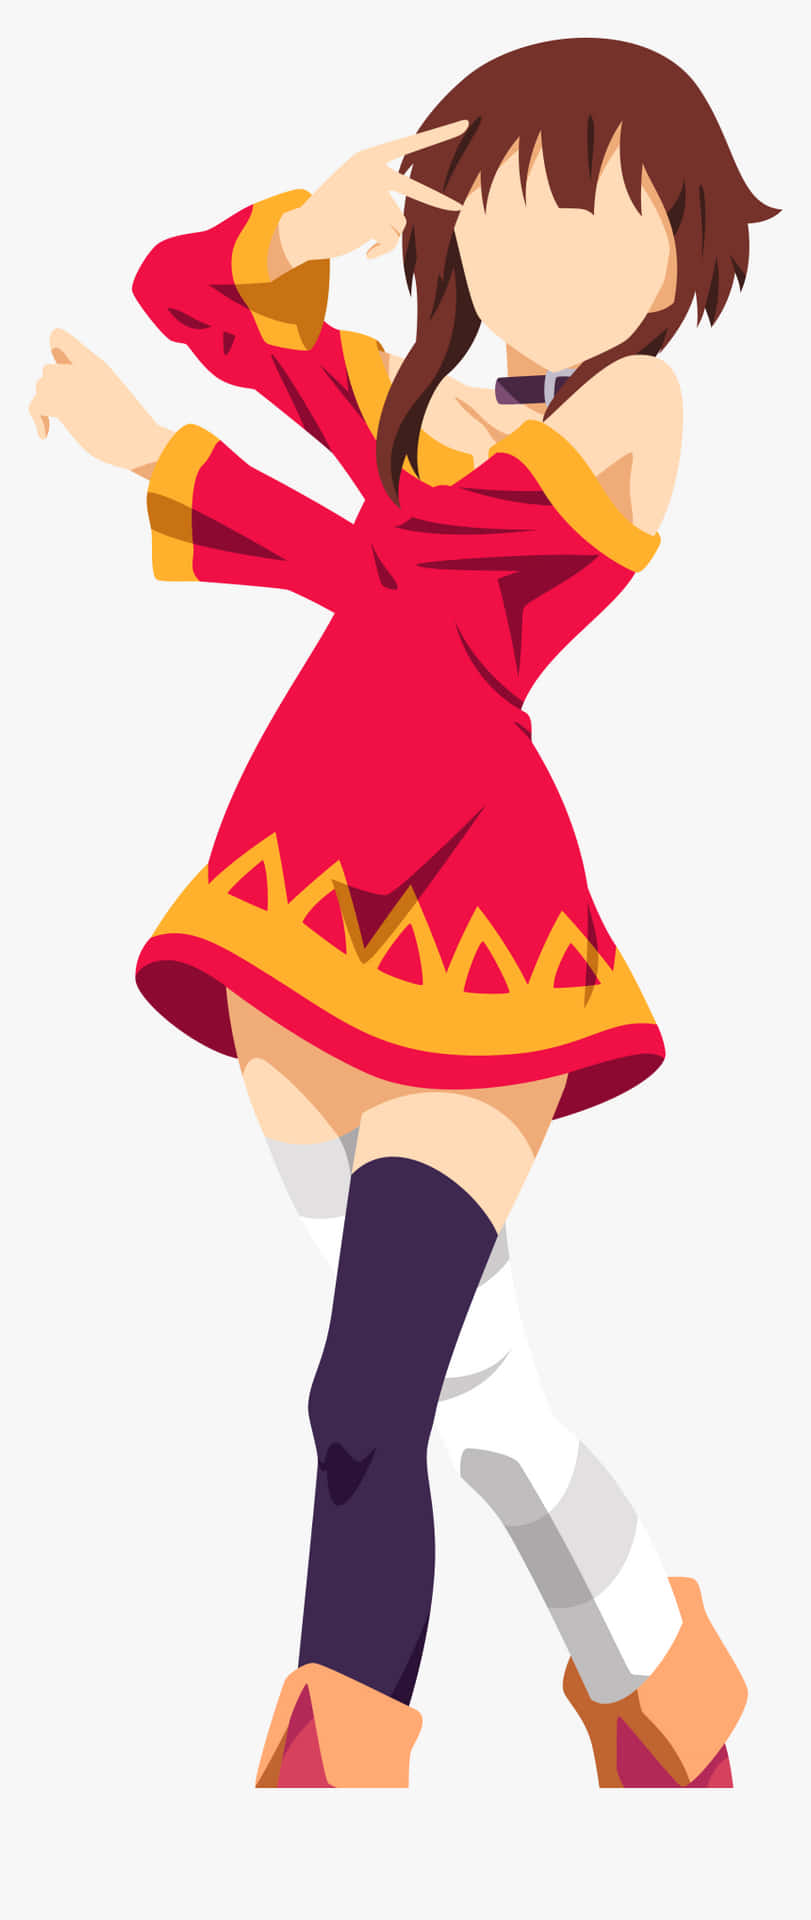 Minimal Anime Megumin Skitse Tapet: Et anime-inspireret tegneserie Tapet Design, der viser figuren Megumin i en minimal ren æstetik. Wallpaper